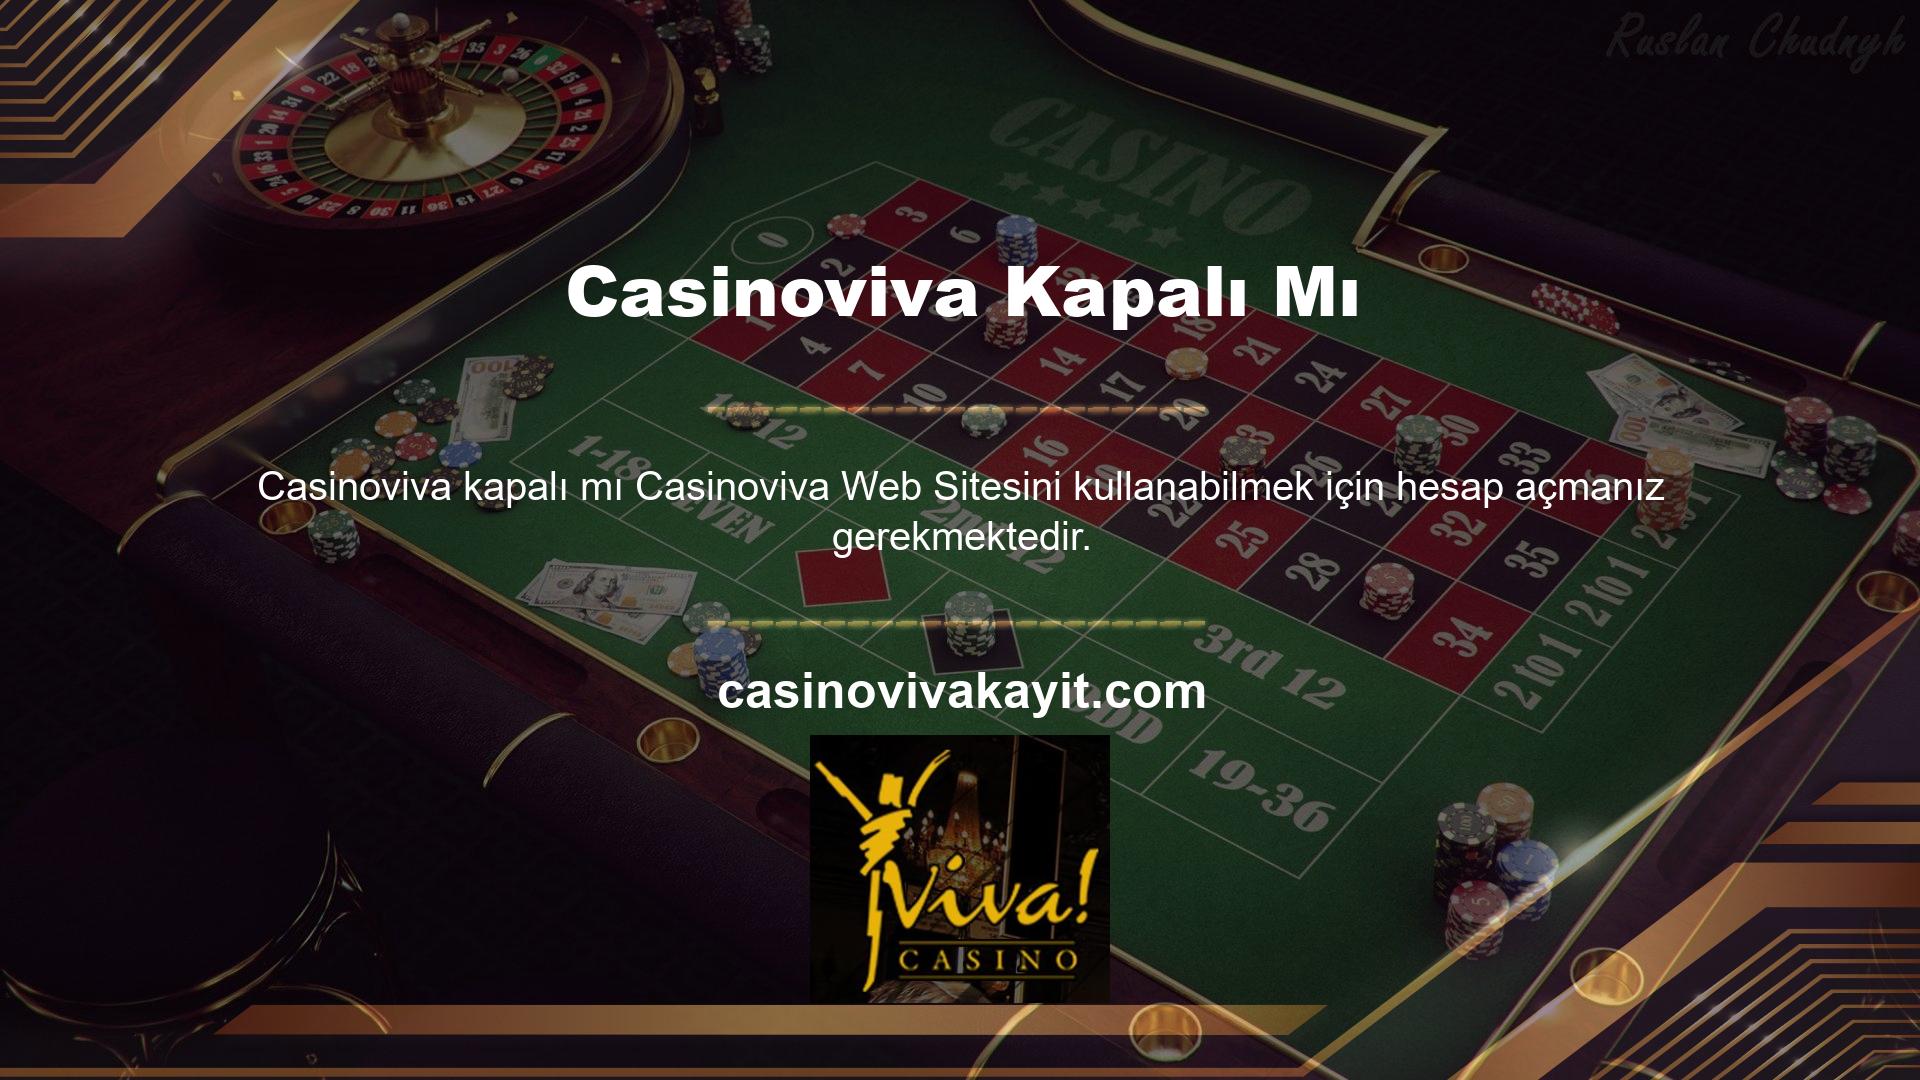 Casinoviva web sitesinde para kazanmak için hesap açmanız ve işlem yapmanız gerekmektedir